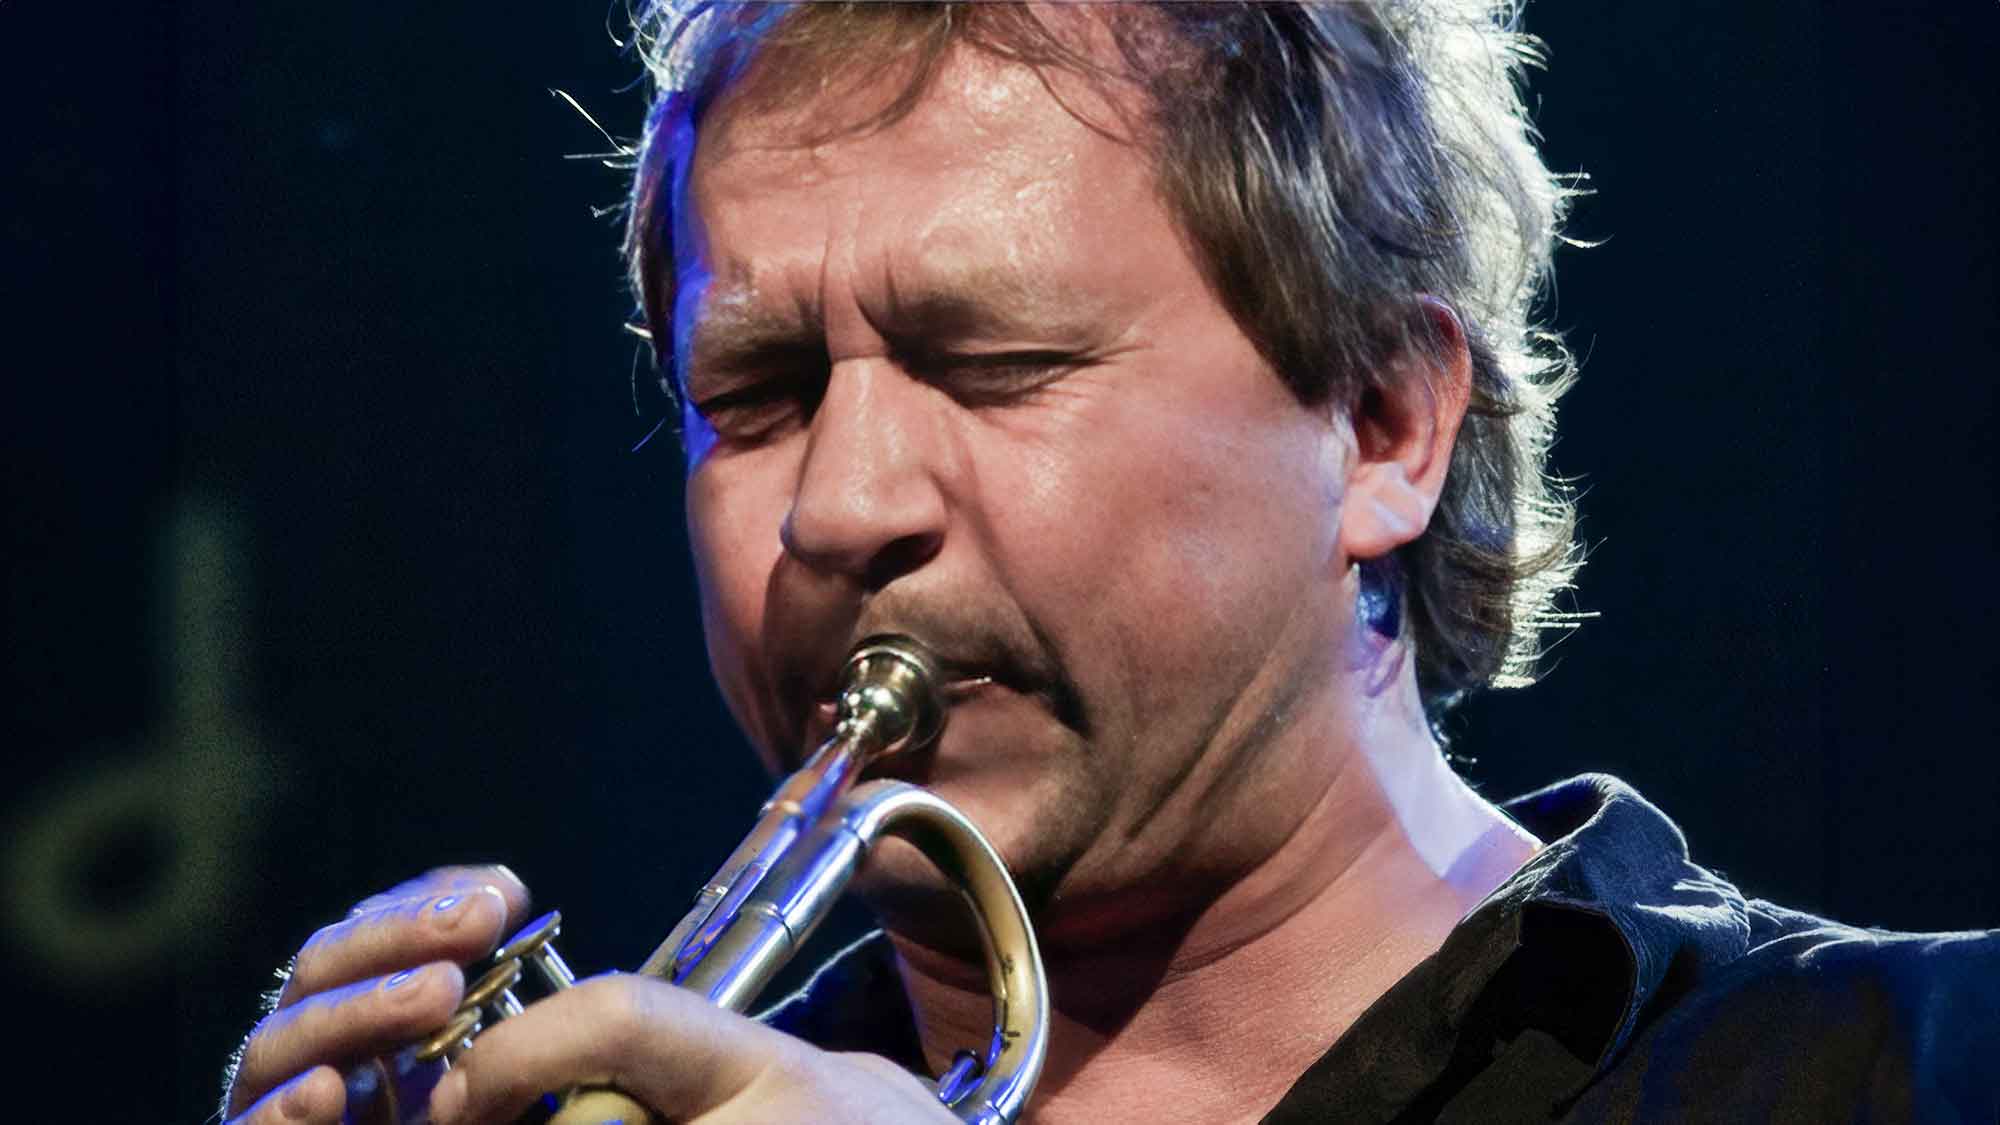 Nils Petter Molvær, norwegischer Trompeter, Komponist und Produzent